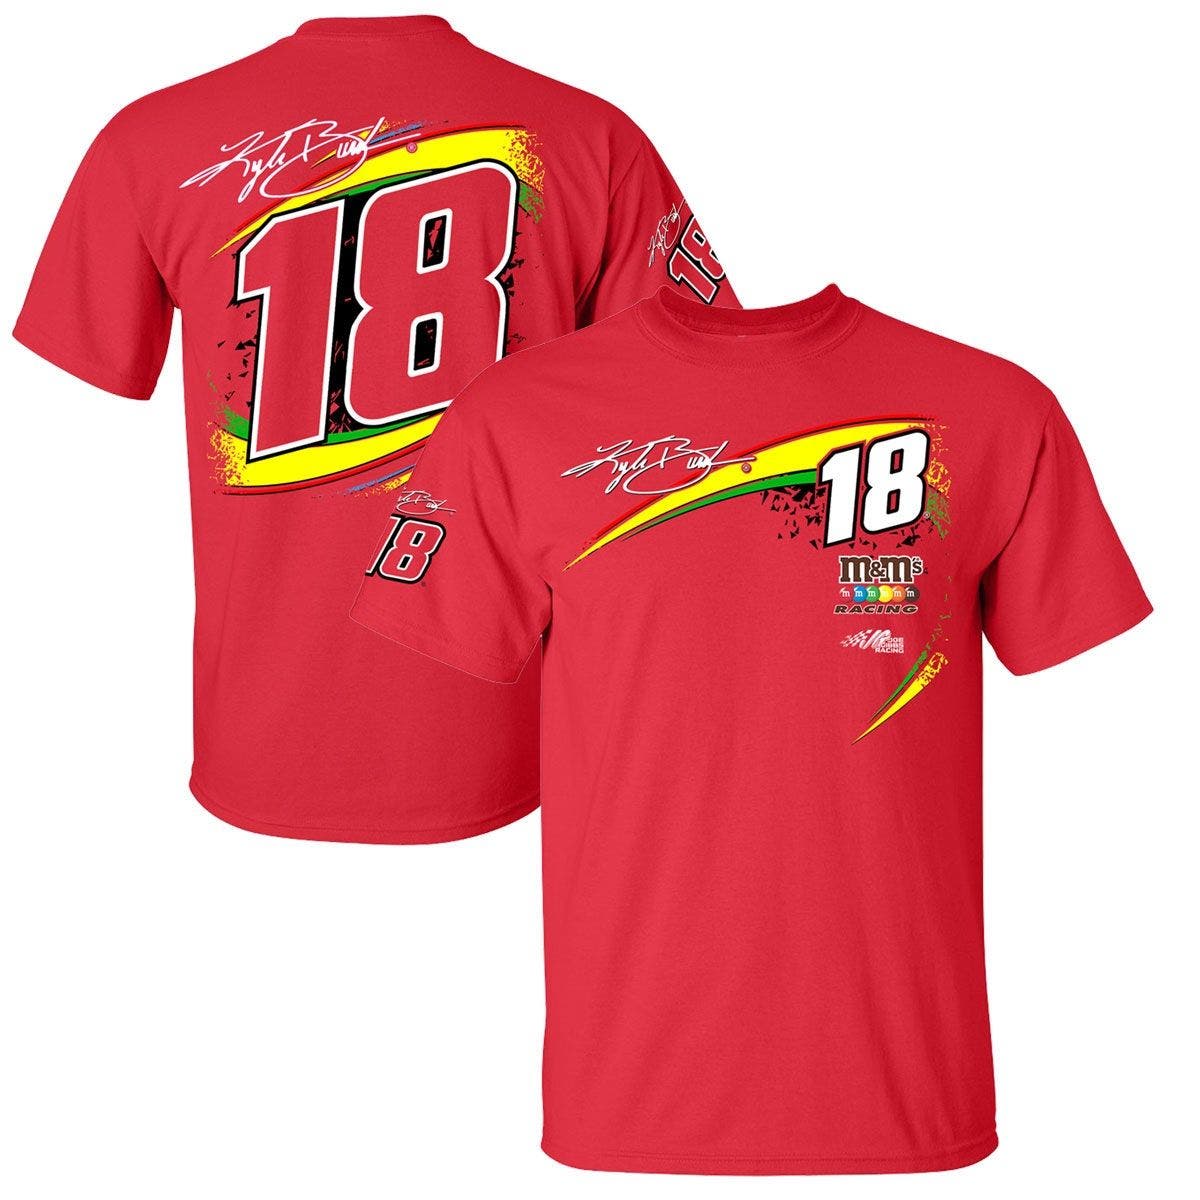 JOE GIBBS RACING TEAM COLLECTION Men's Joe Gibbs Racing Team Collection Red Kyle Busch M & Ms Xtreme T-Shirt